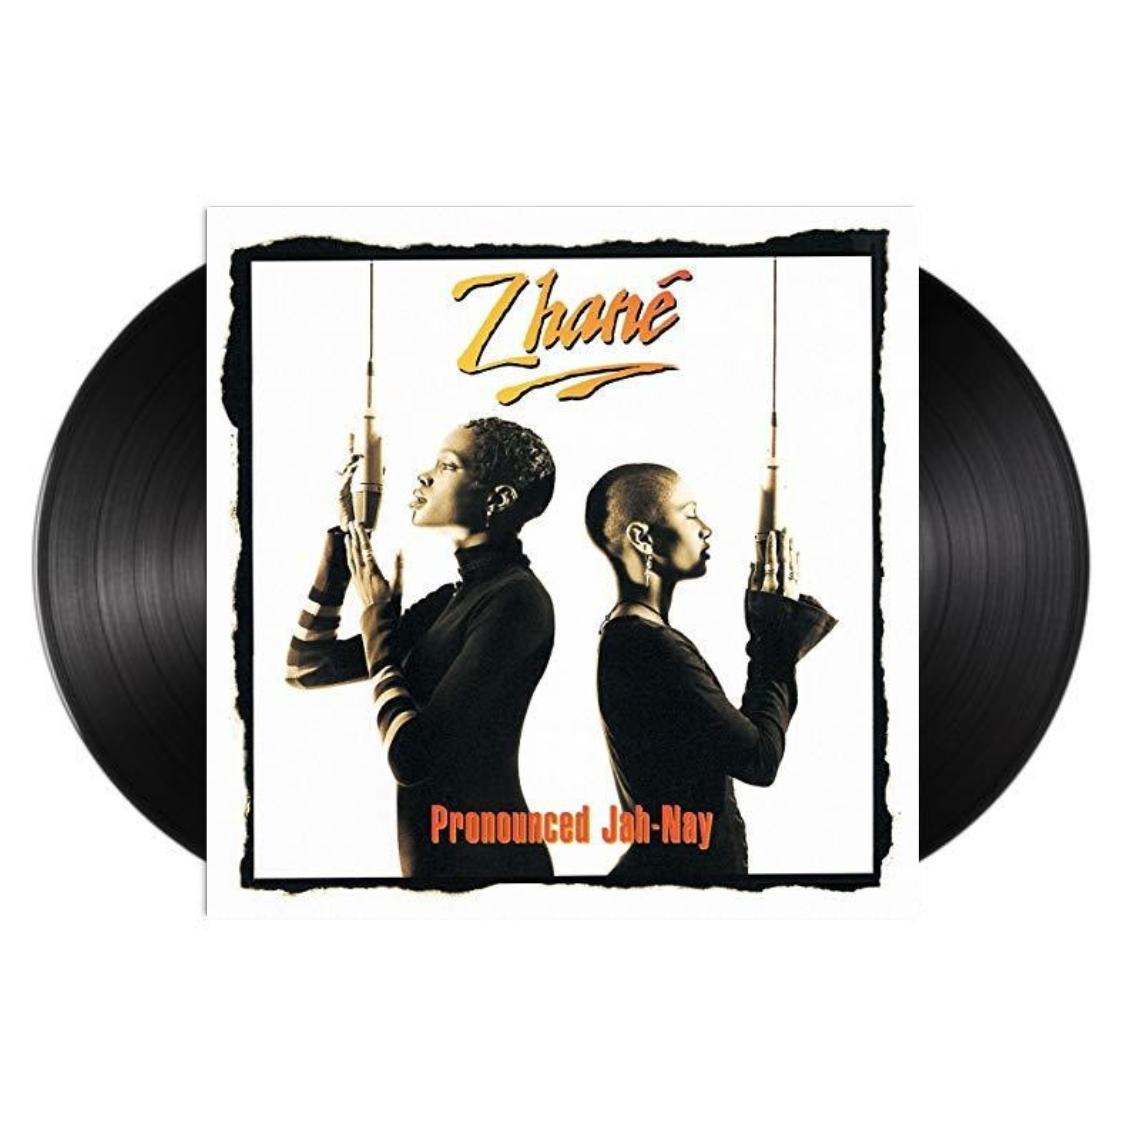 Zhane - Pronounced Jah-Nay (Vinyl 2xLP)